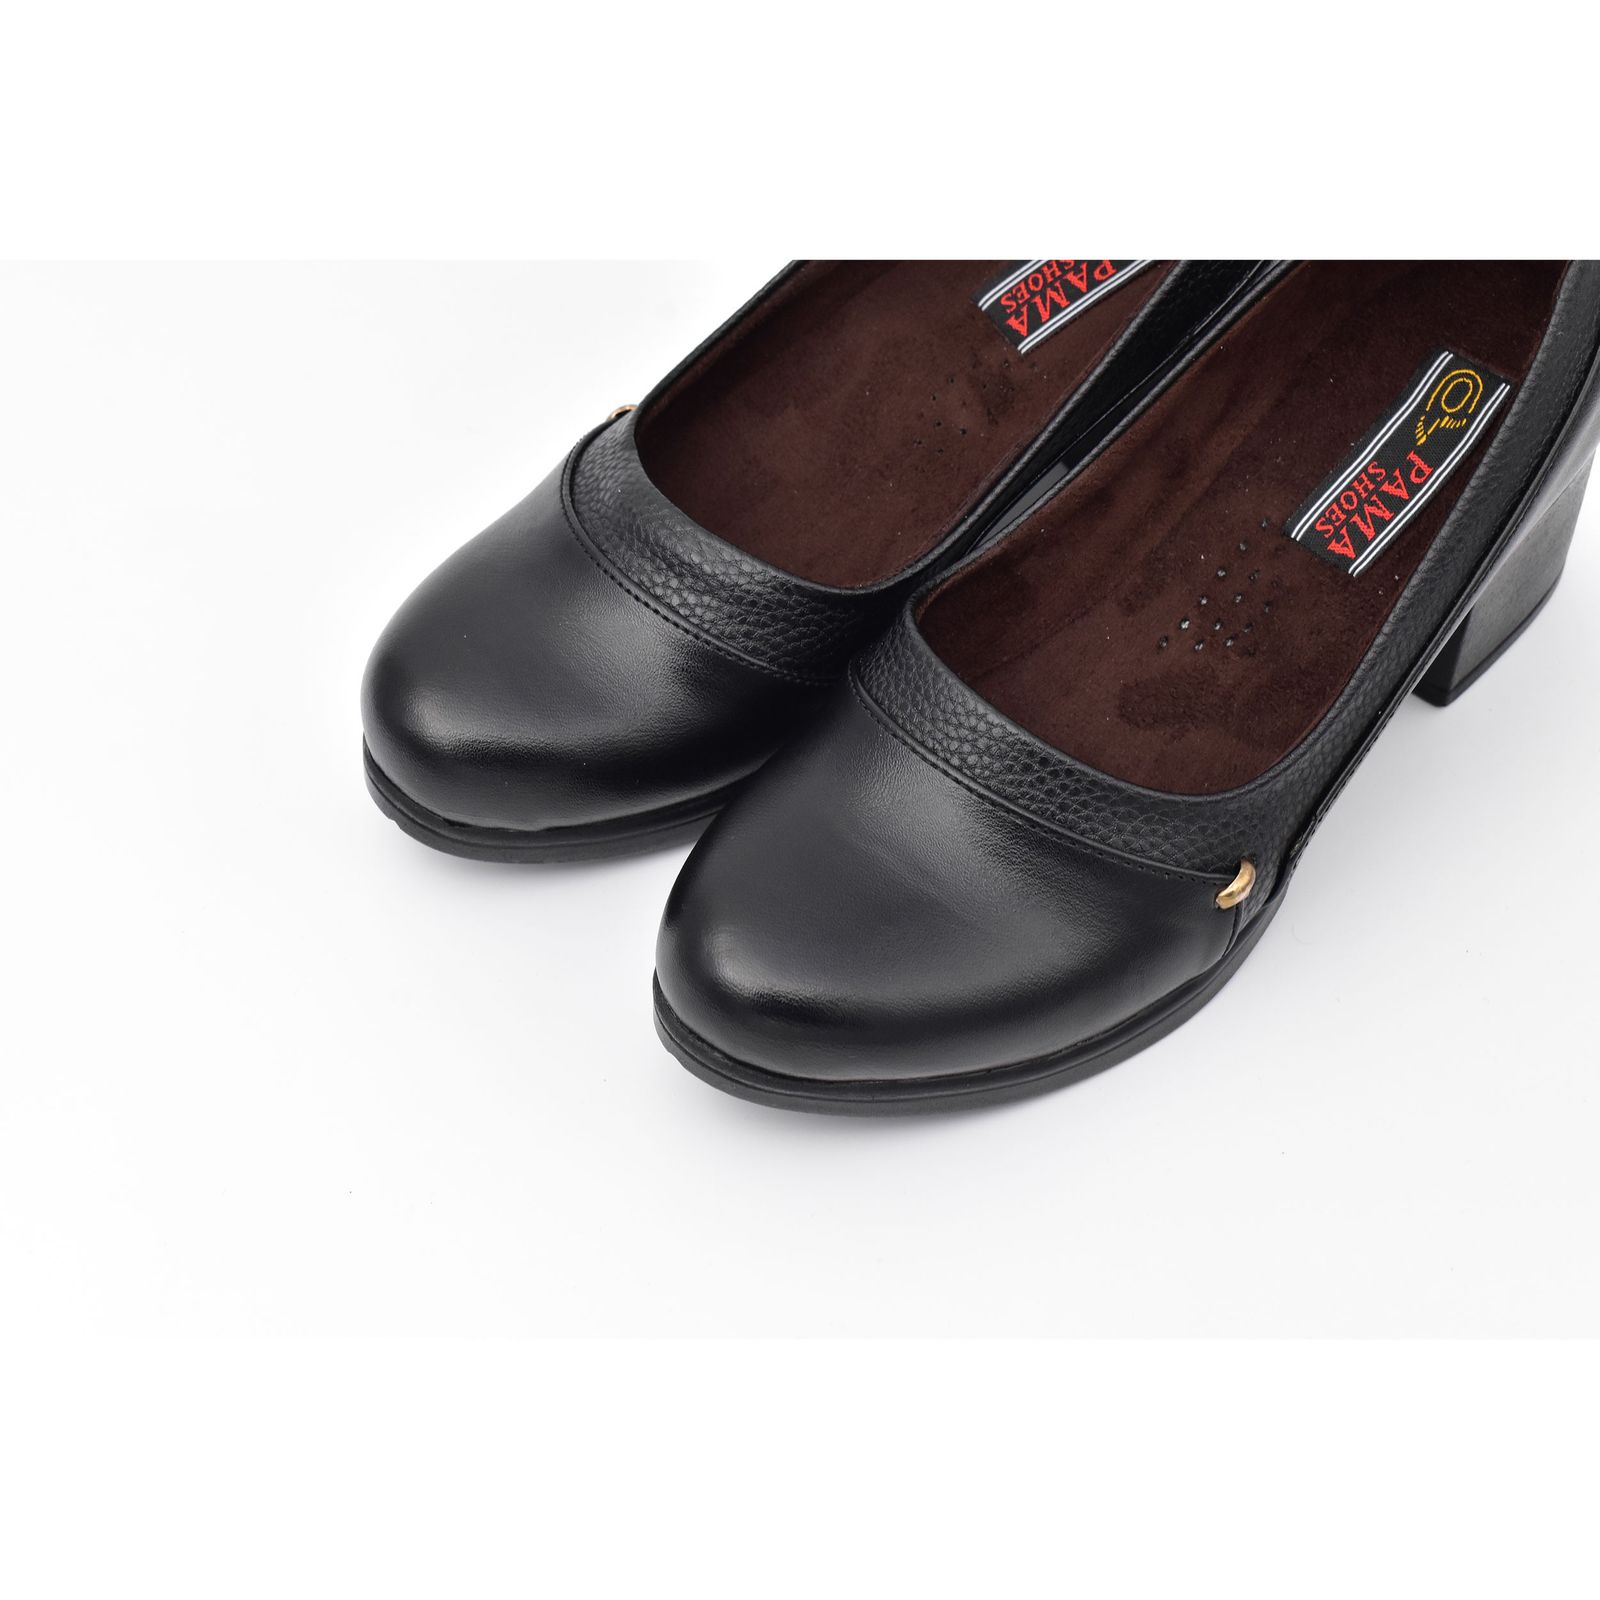  کفش زنانه پاما مدل هما کد G1129 -  - 3